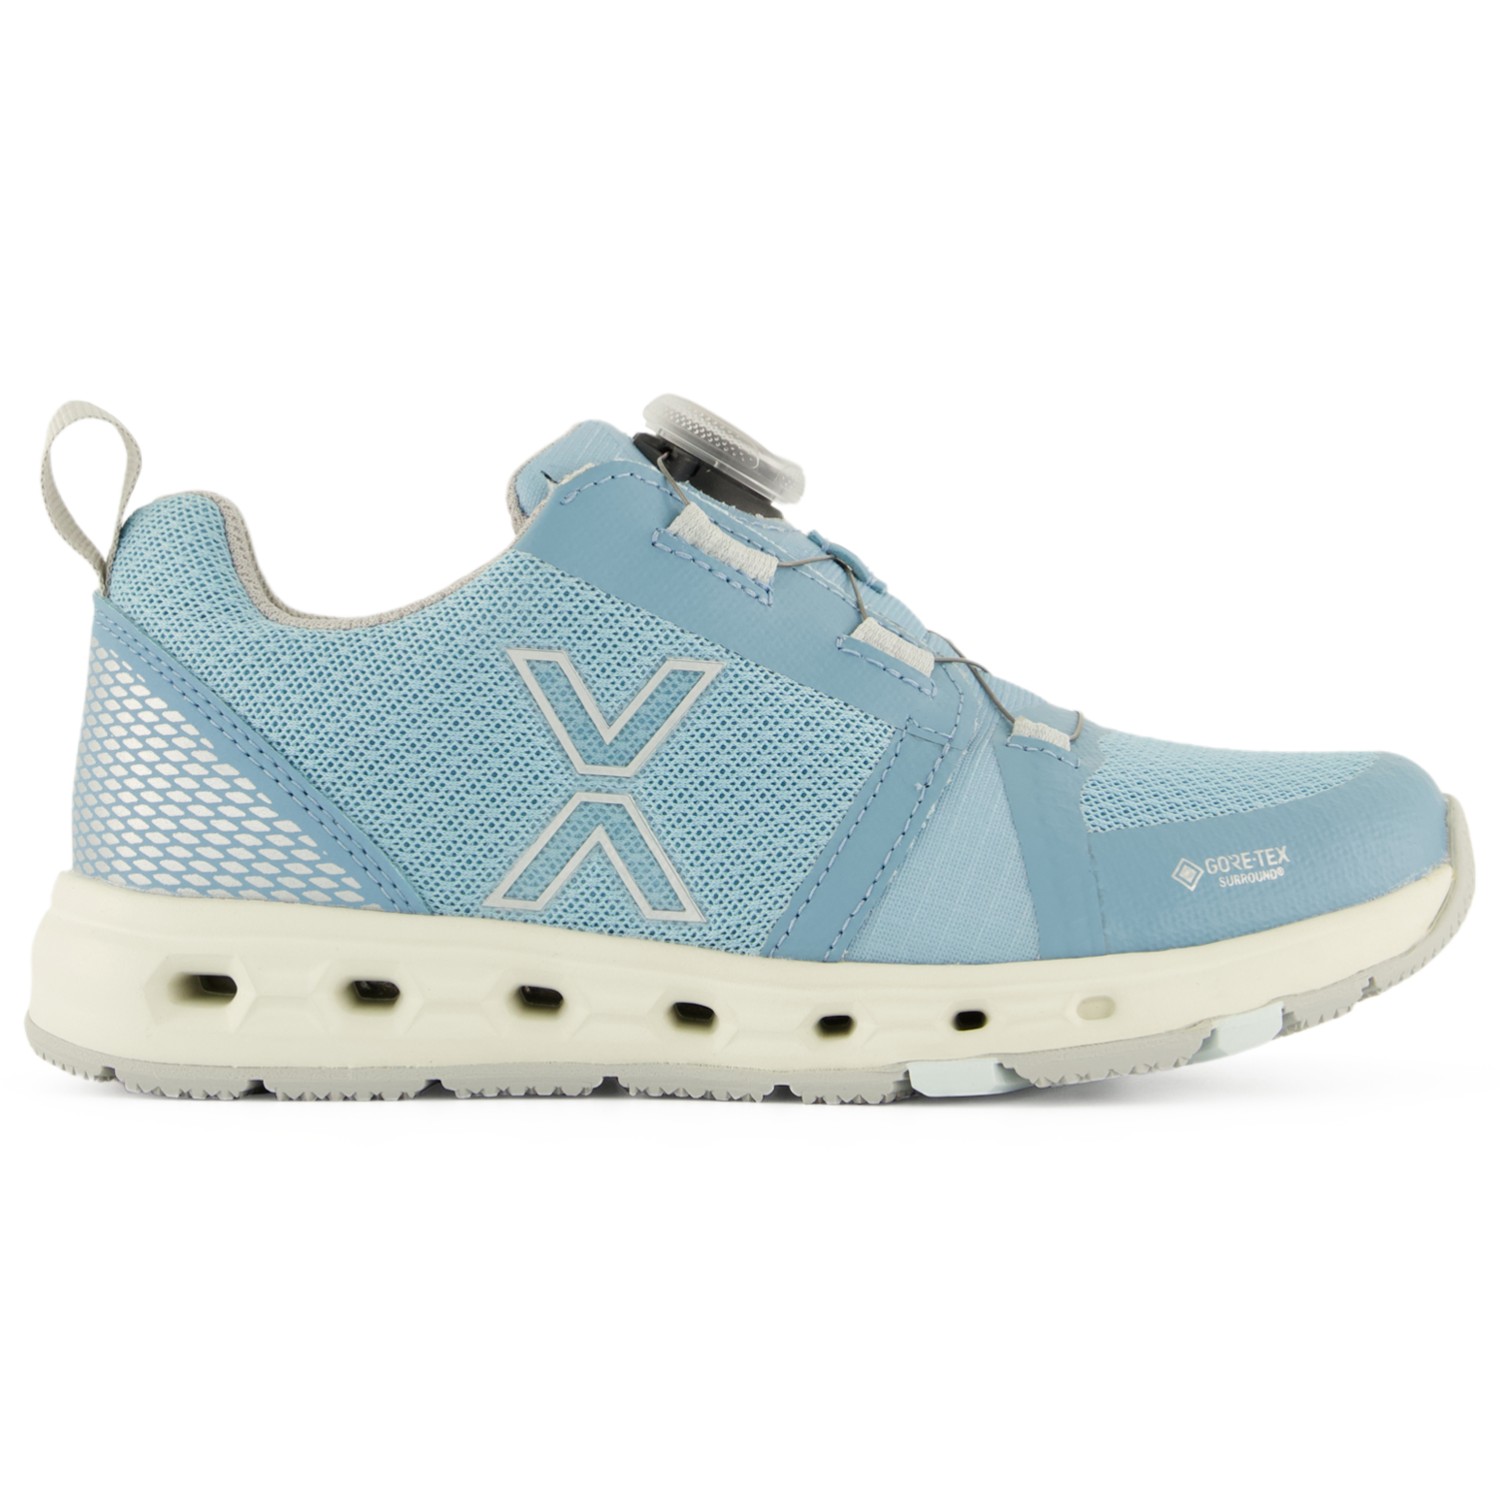 Повседневная обувь Vado Kid's Air Low Boa GTX Surround, небесно голубой цена и фото